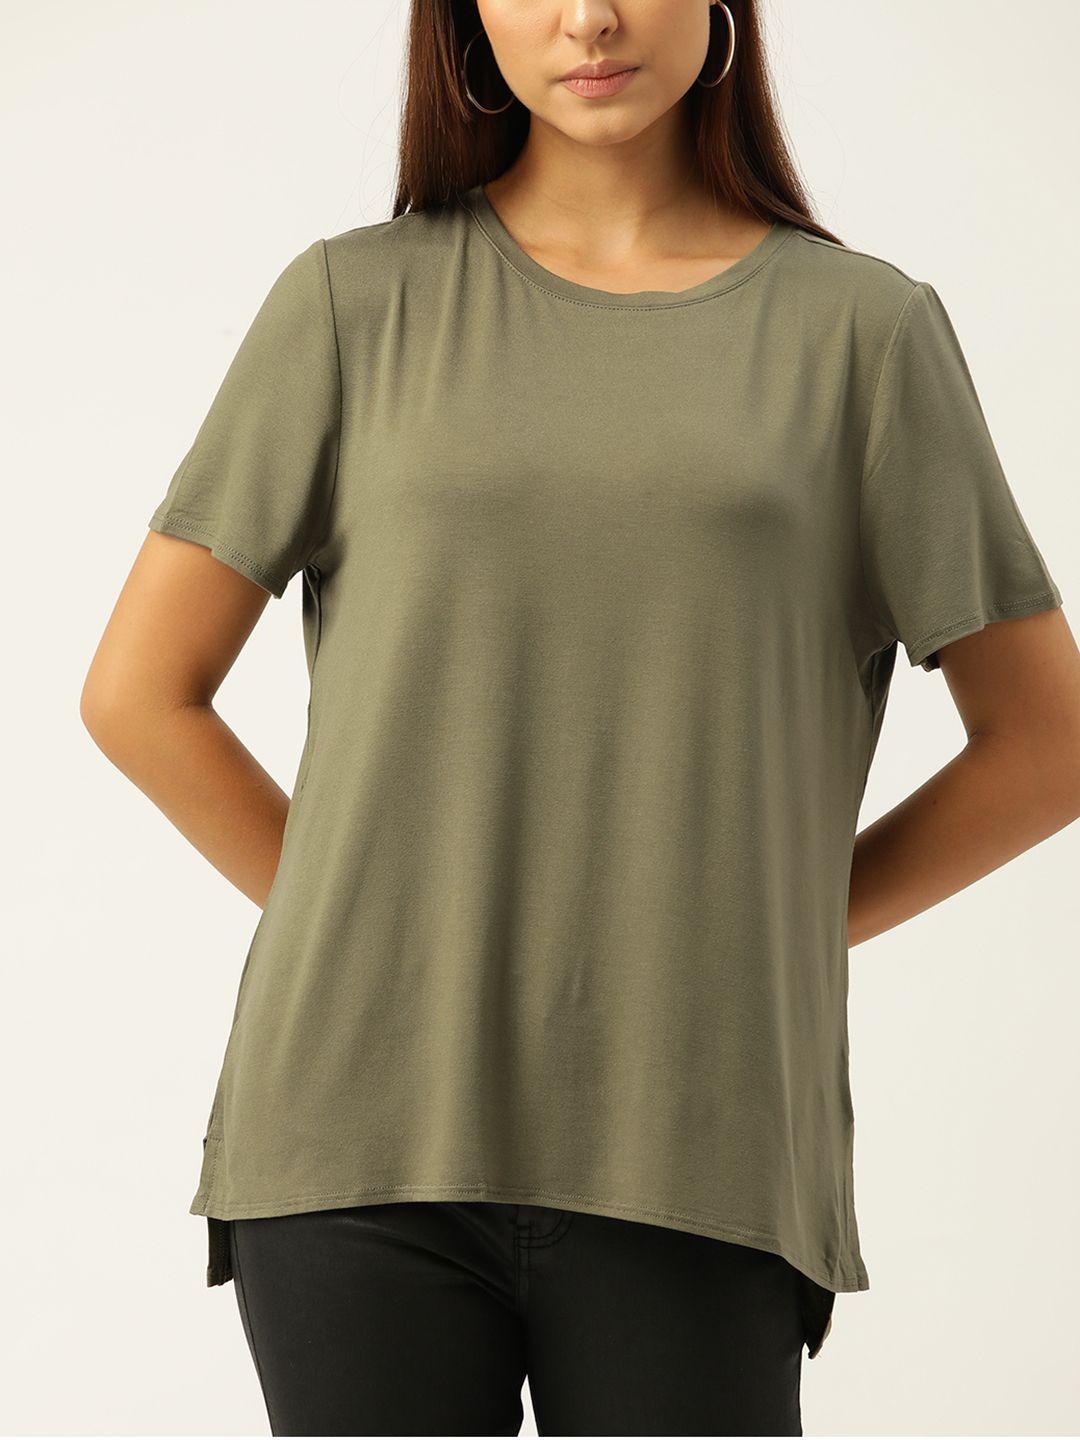 macy's alfani women olive green solid t-shirt